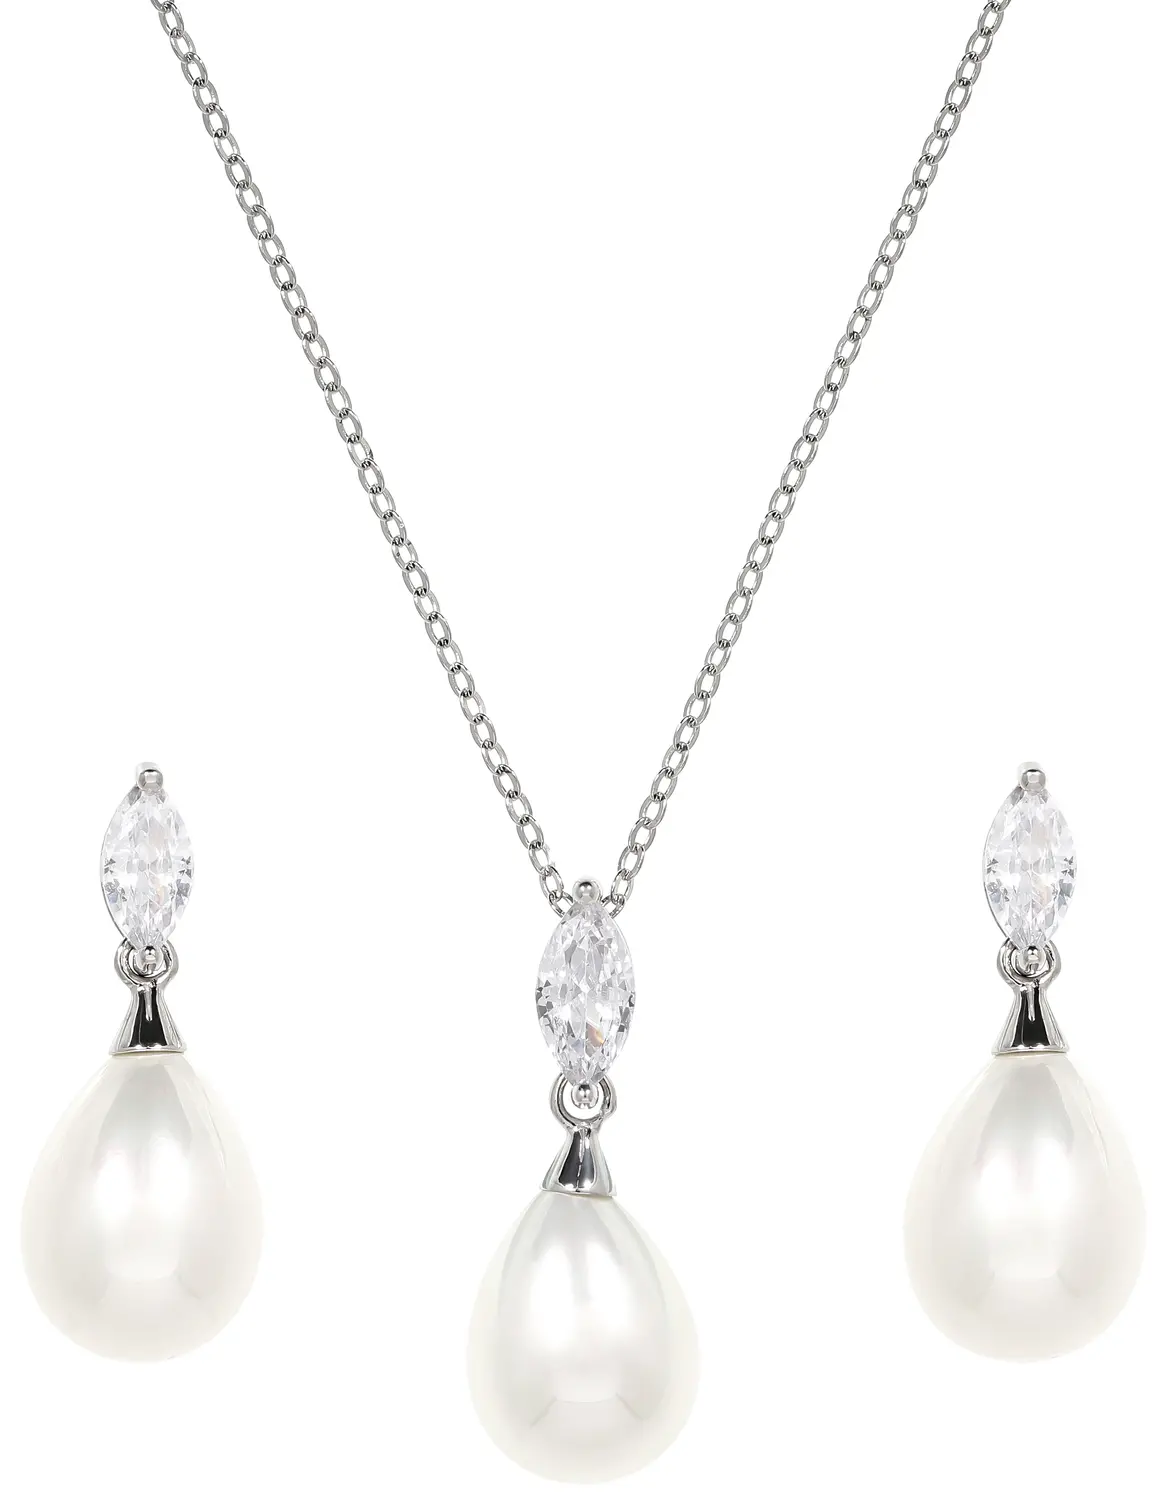 Parure - Pretty Pearls